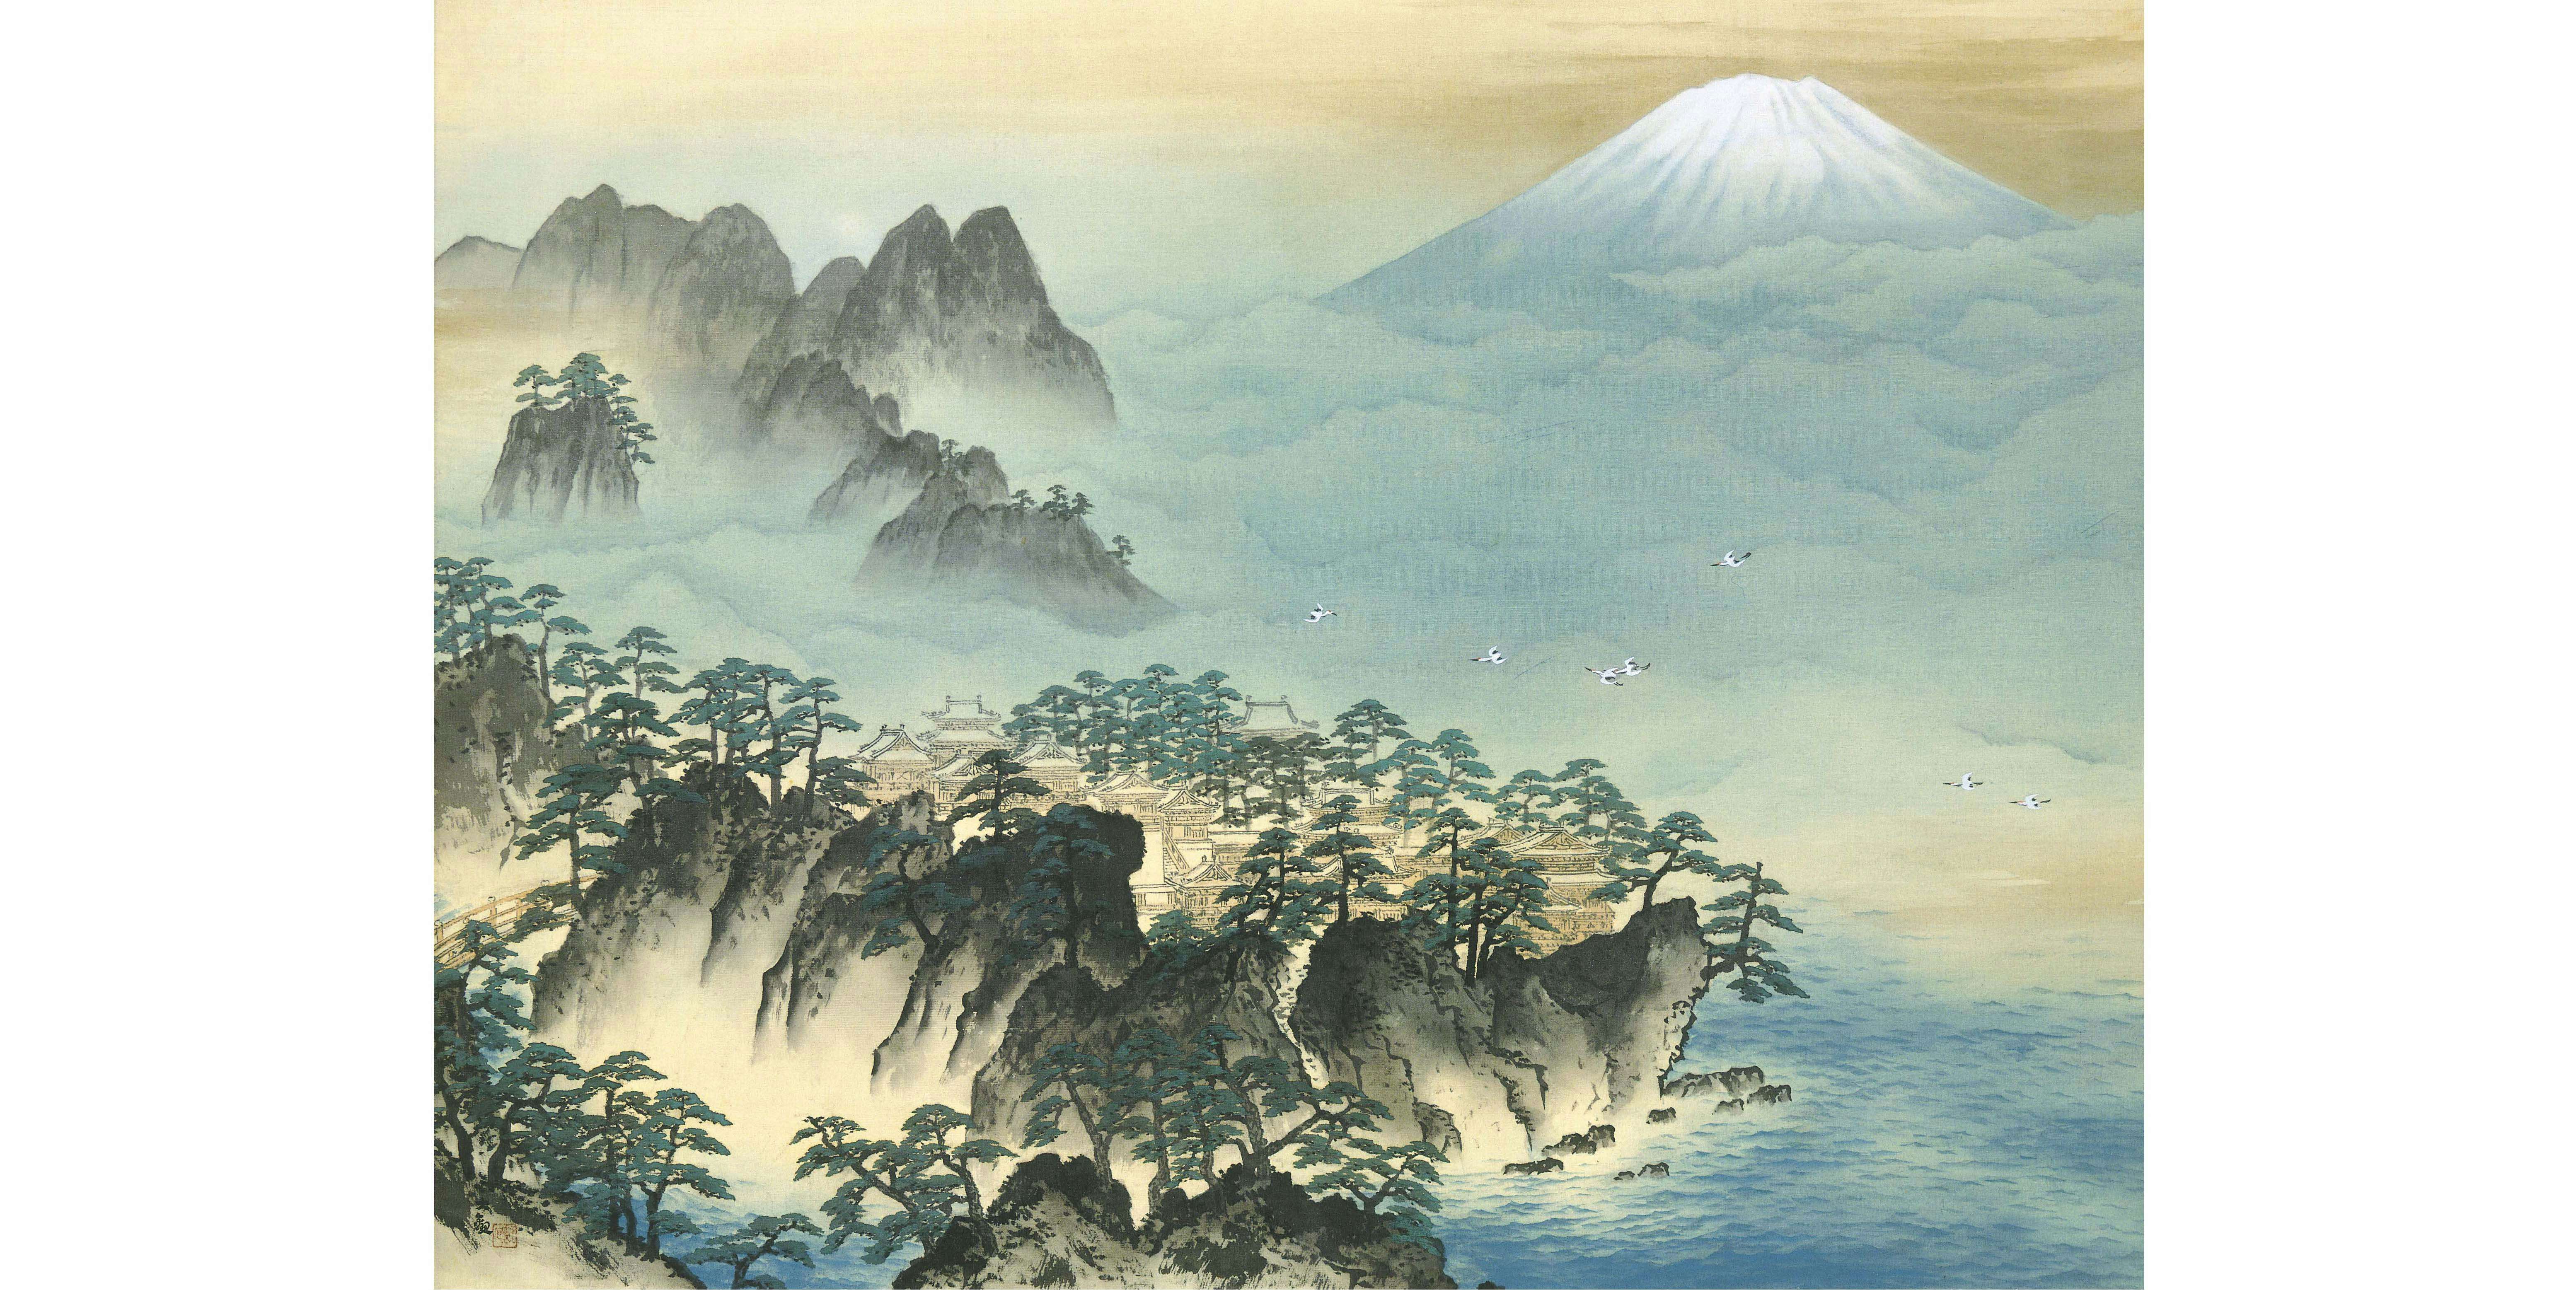 横山大観をめぐる人物相関図をひとつの展覧会に。日本画の巨匠名